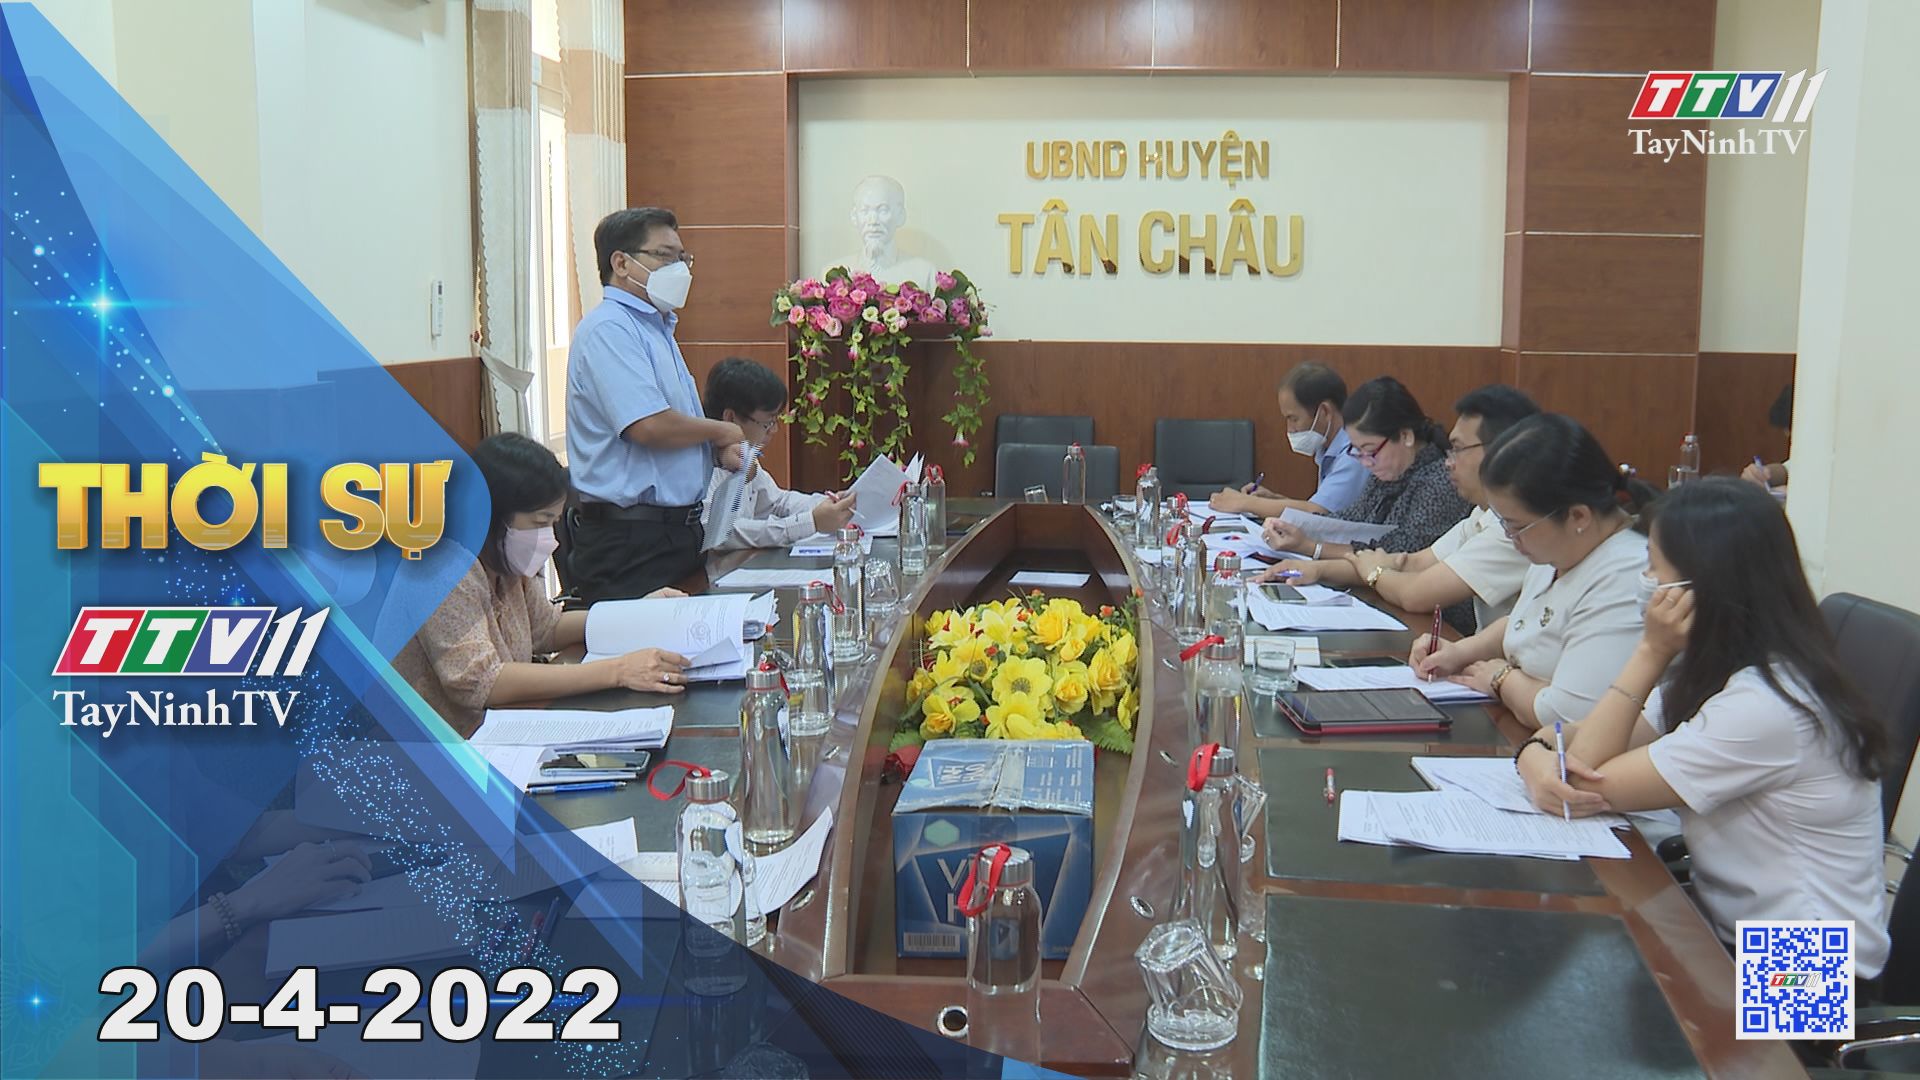 Thời sự Tây Ninh 20-4-2022 | Tin tức hôm nay | TayNinhTV